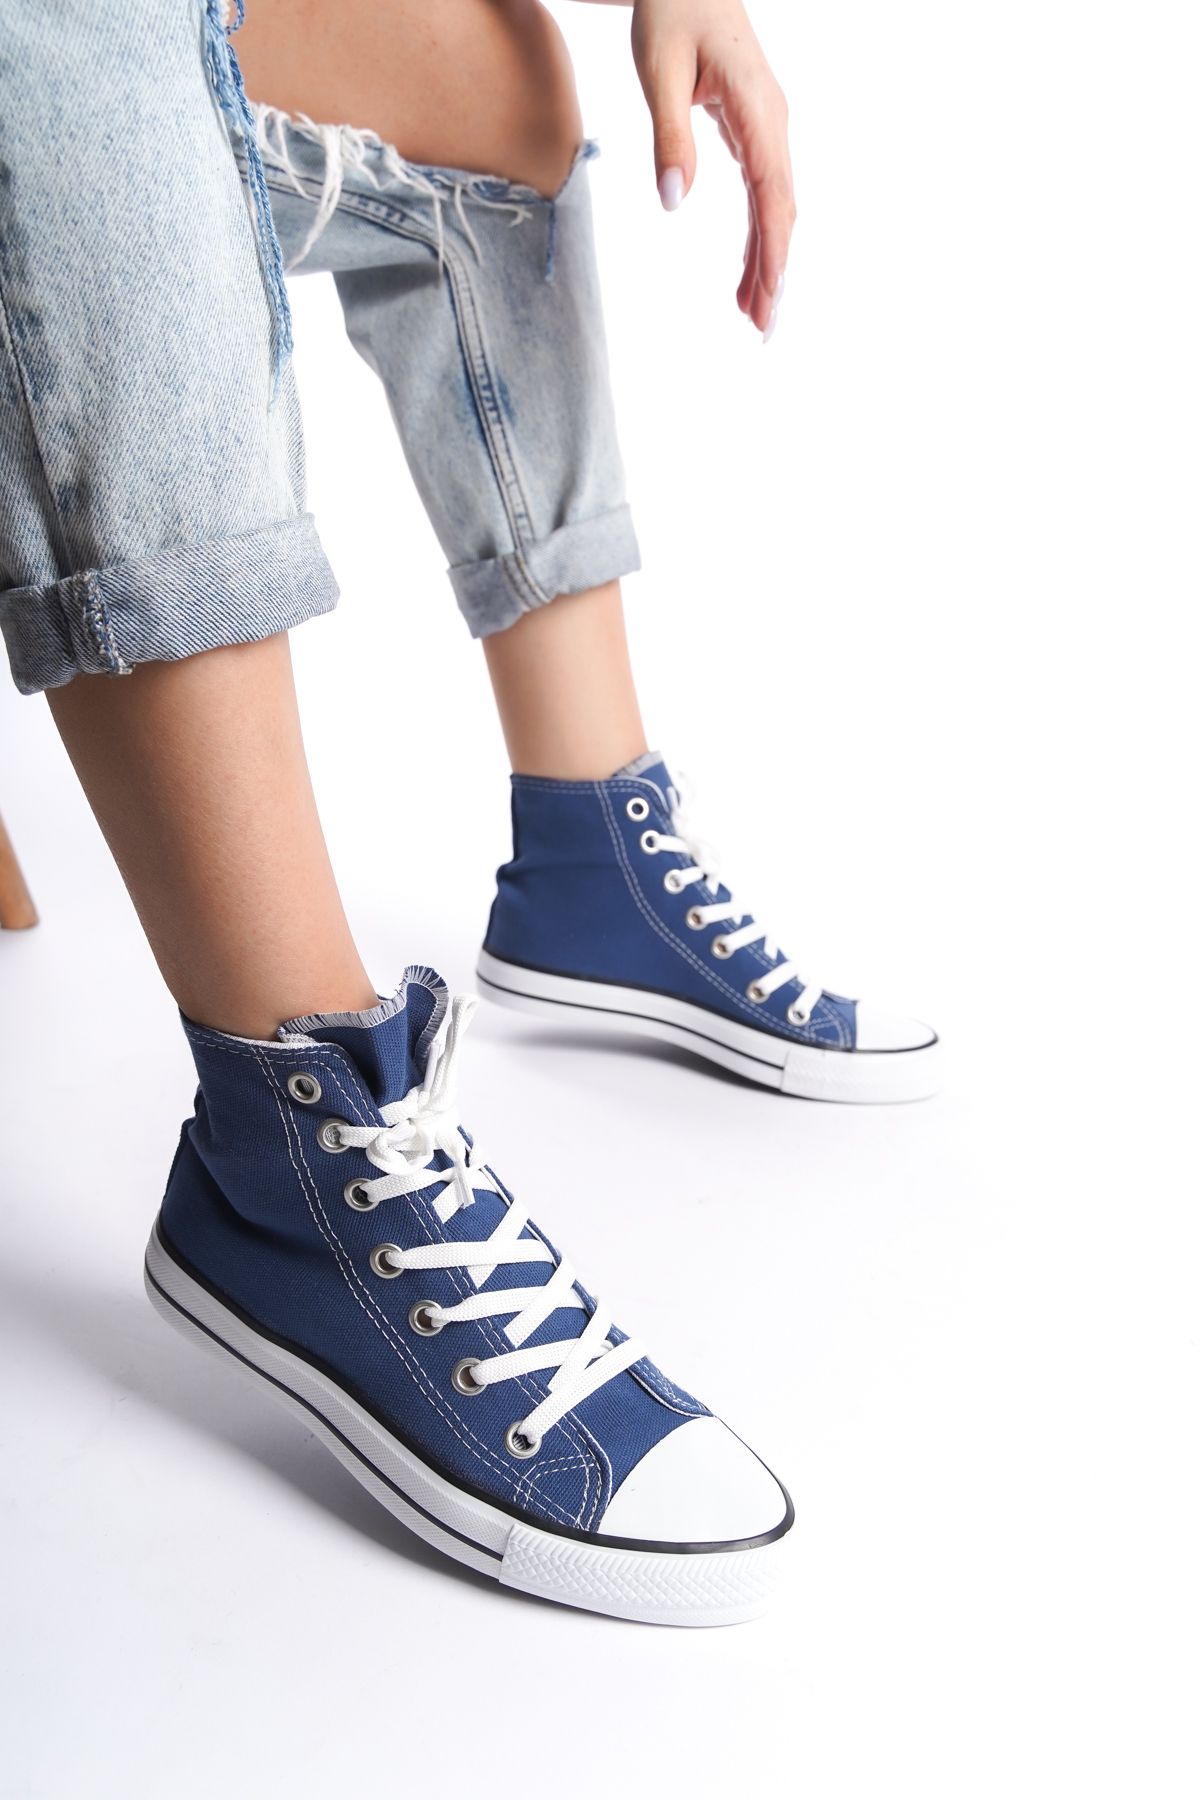 eformoda by emre yılmaz Mavi Kadın Uzun Keten Spor Ayakkabı Günlük Sneakers CNV6